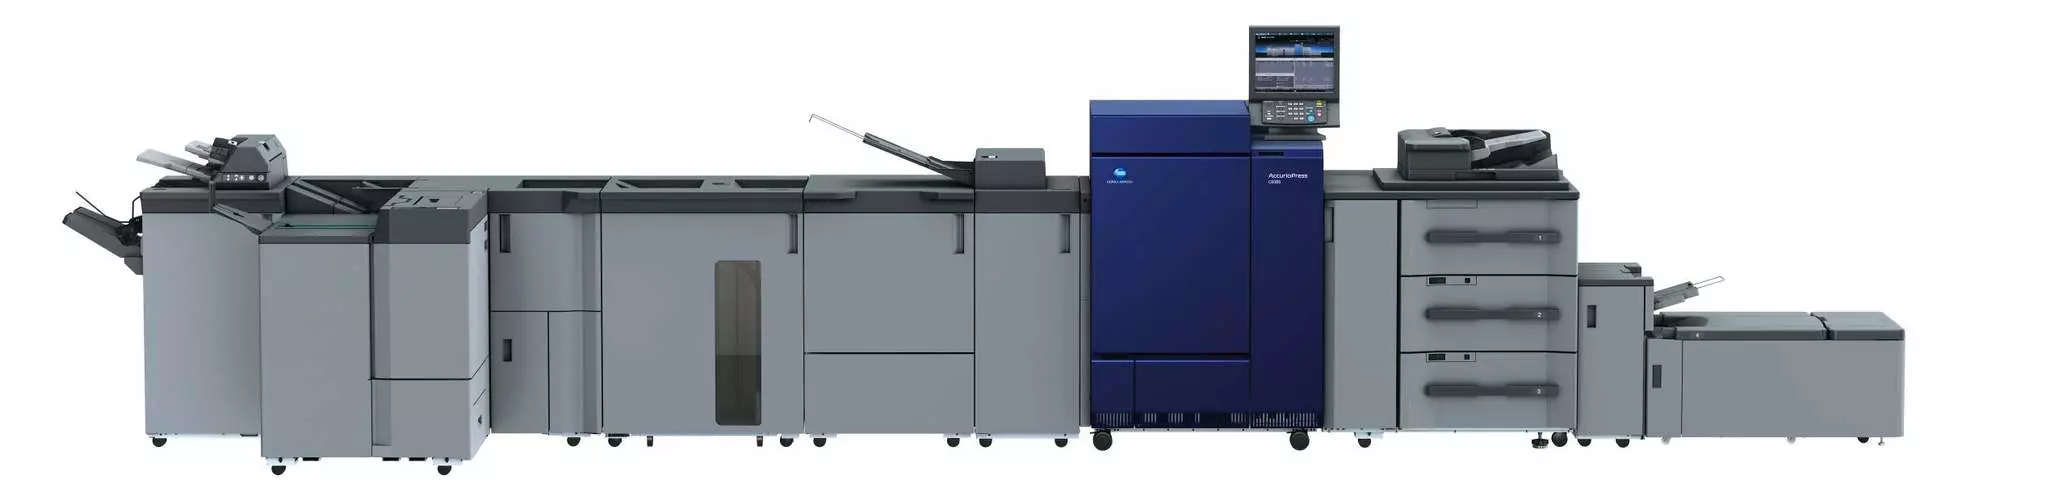 Konica Minolta AccurioPress c6085 professionel printer